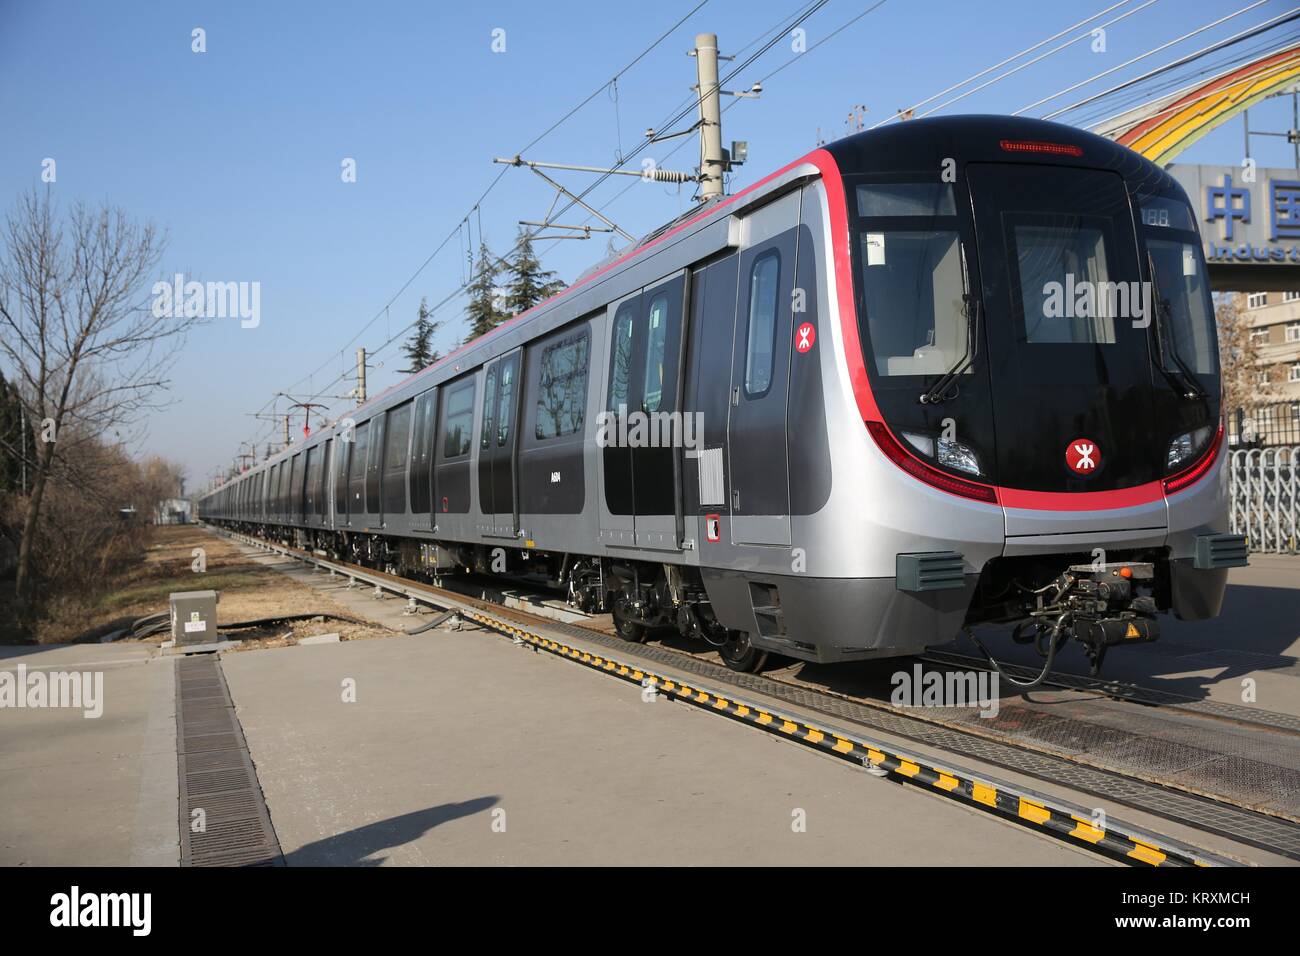 Qingdao, Cina Shandong. Xxi Dec, 2017. Un nuovo treno della metropolitana è visto a CRRC Qingdao Sifang Company a Qingdao, Cina orientale della provincia di Shandong, 21 dicembre 2017. Il treno della metropolitana, che possiedono i più alti standard internazionali per la sicurezza antincendio, è uscito dalla linea di assemblaggio a Qingdao giovedì. Il treno è stato sviluppato per le linee in centro a Hong Kong, Cina del sud. Credito: Zhang Jingang/Xinhua/Alamy Live News Foto Stock